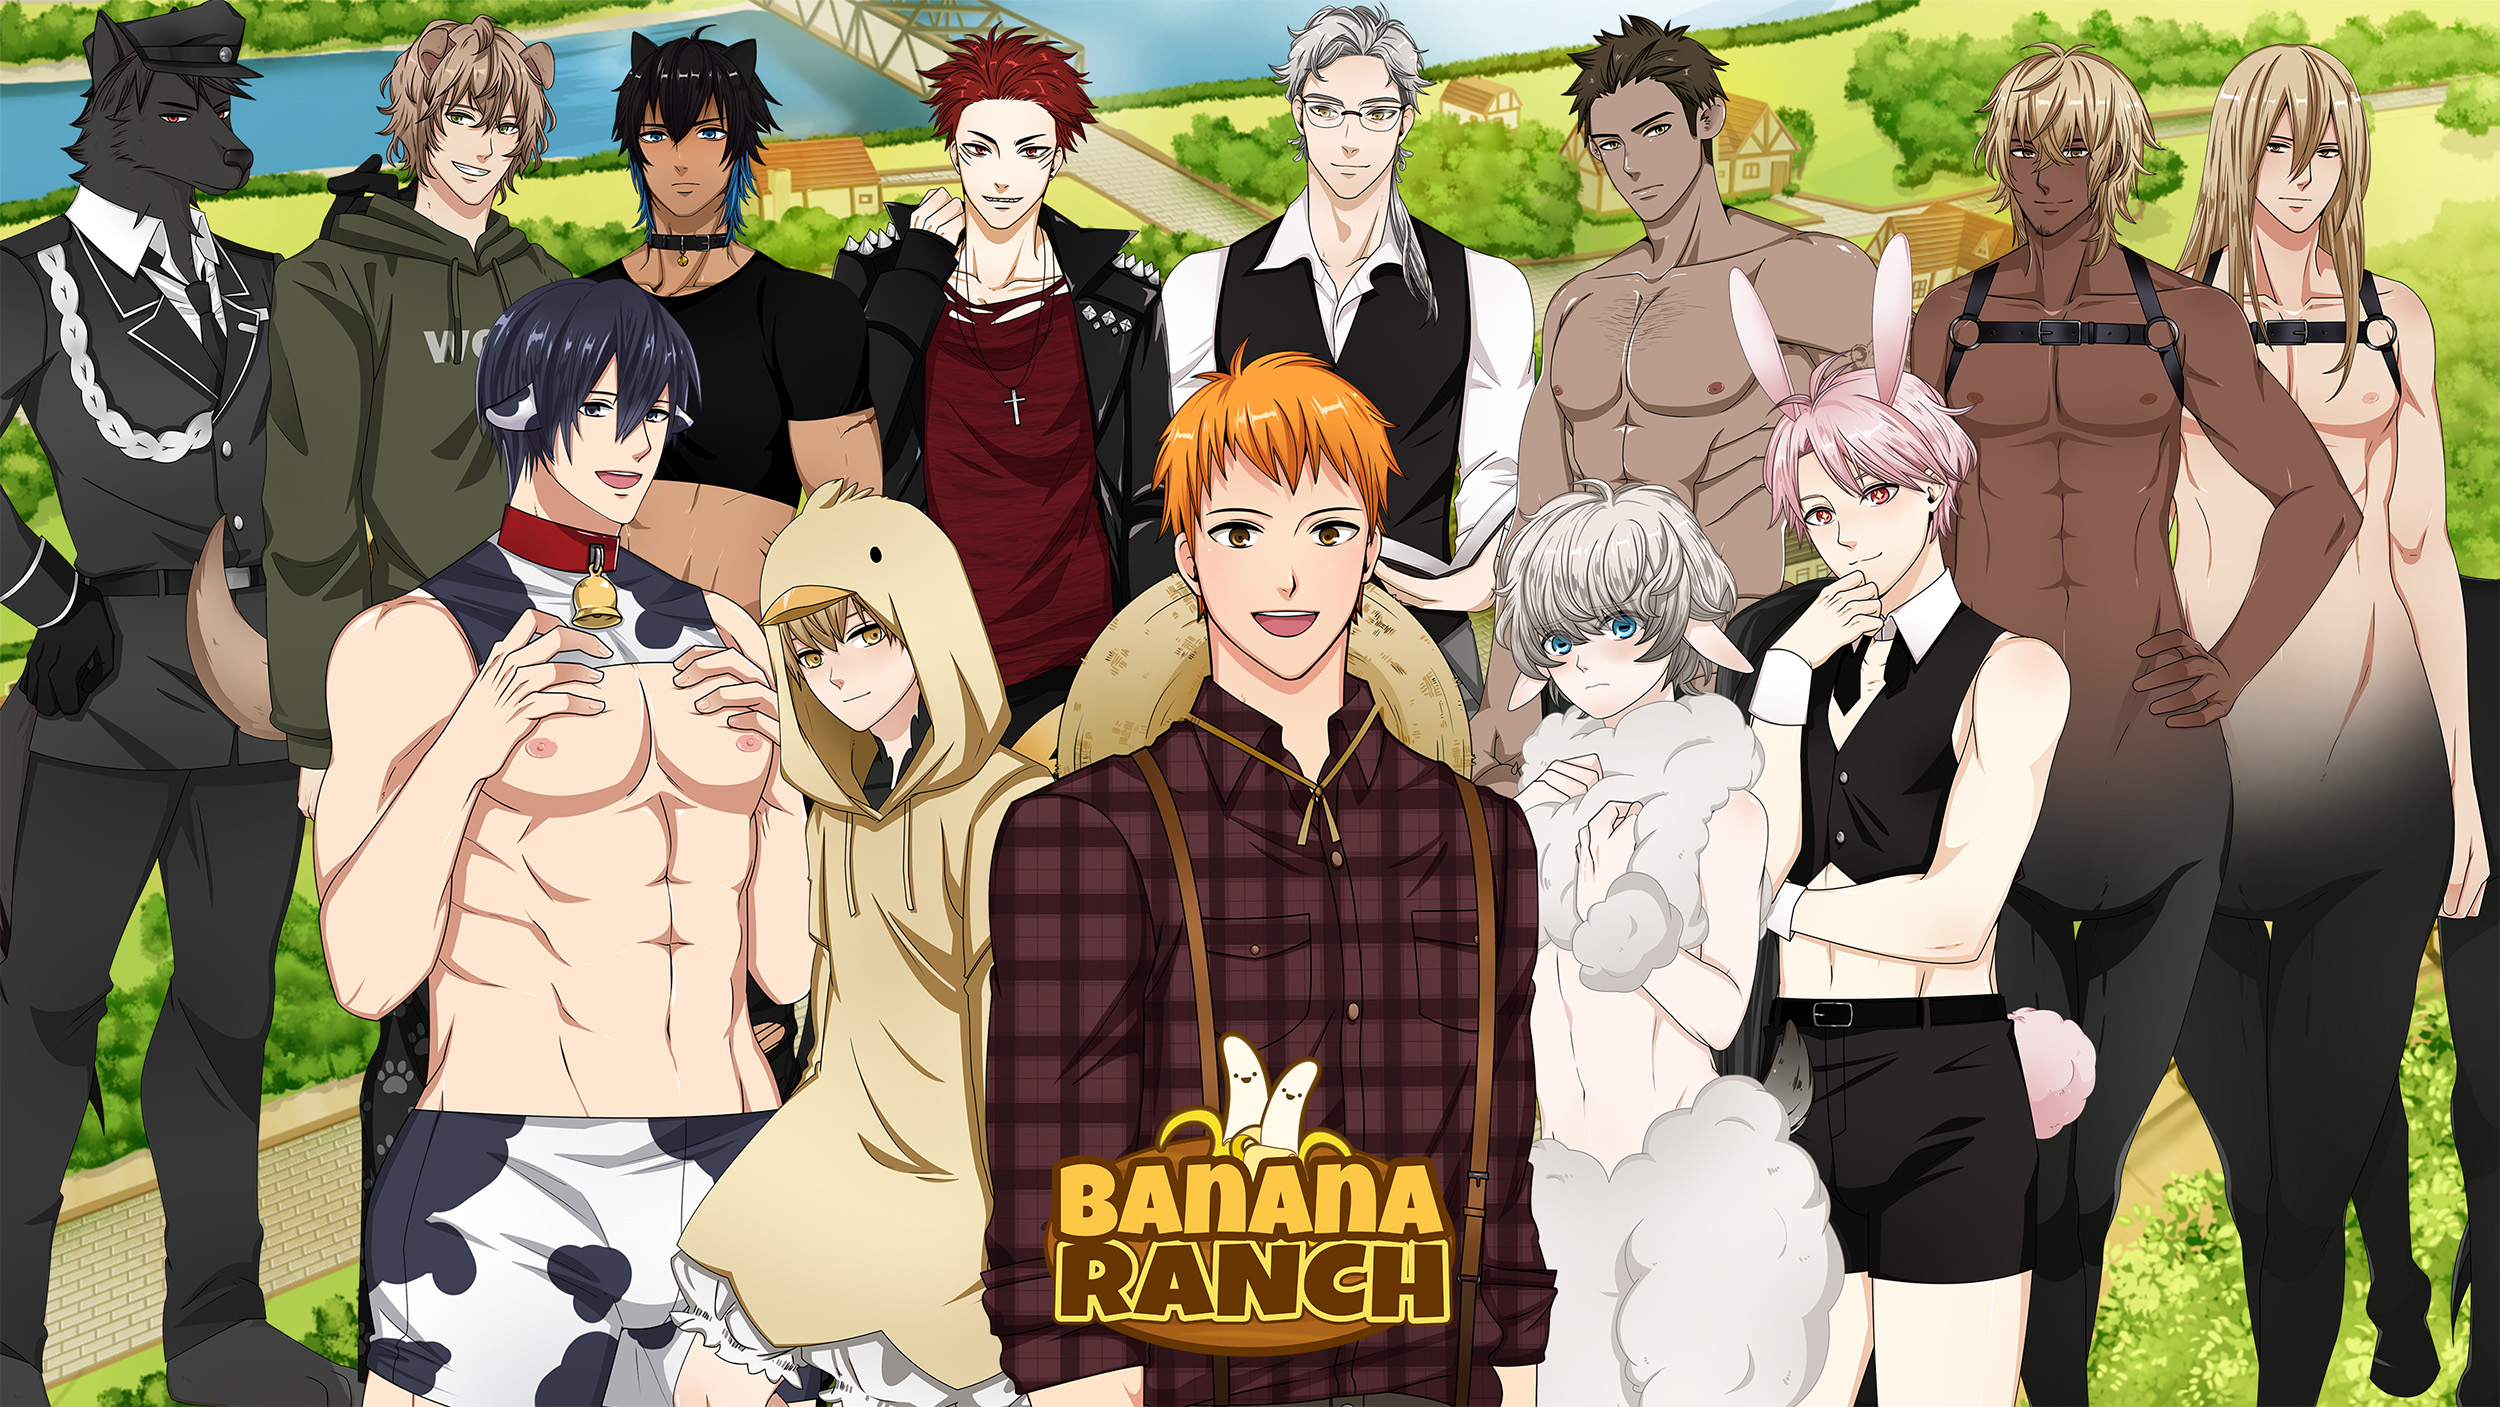 Banana Ranch: 18+ BL/Yaoi/Gay Visual Novel / Dating sim game by Meyaoi Games